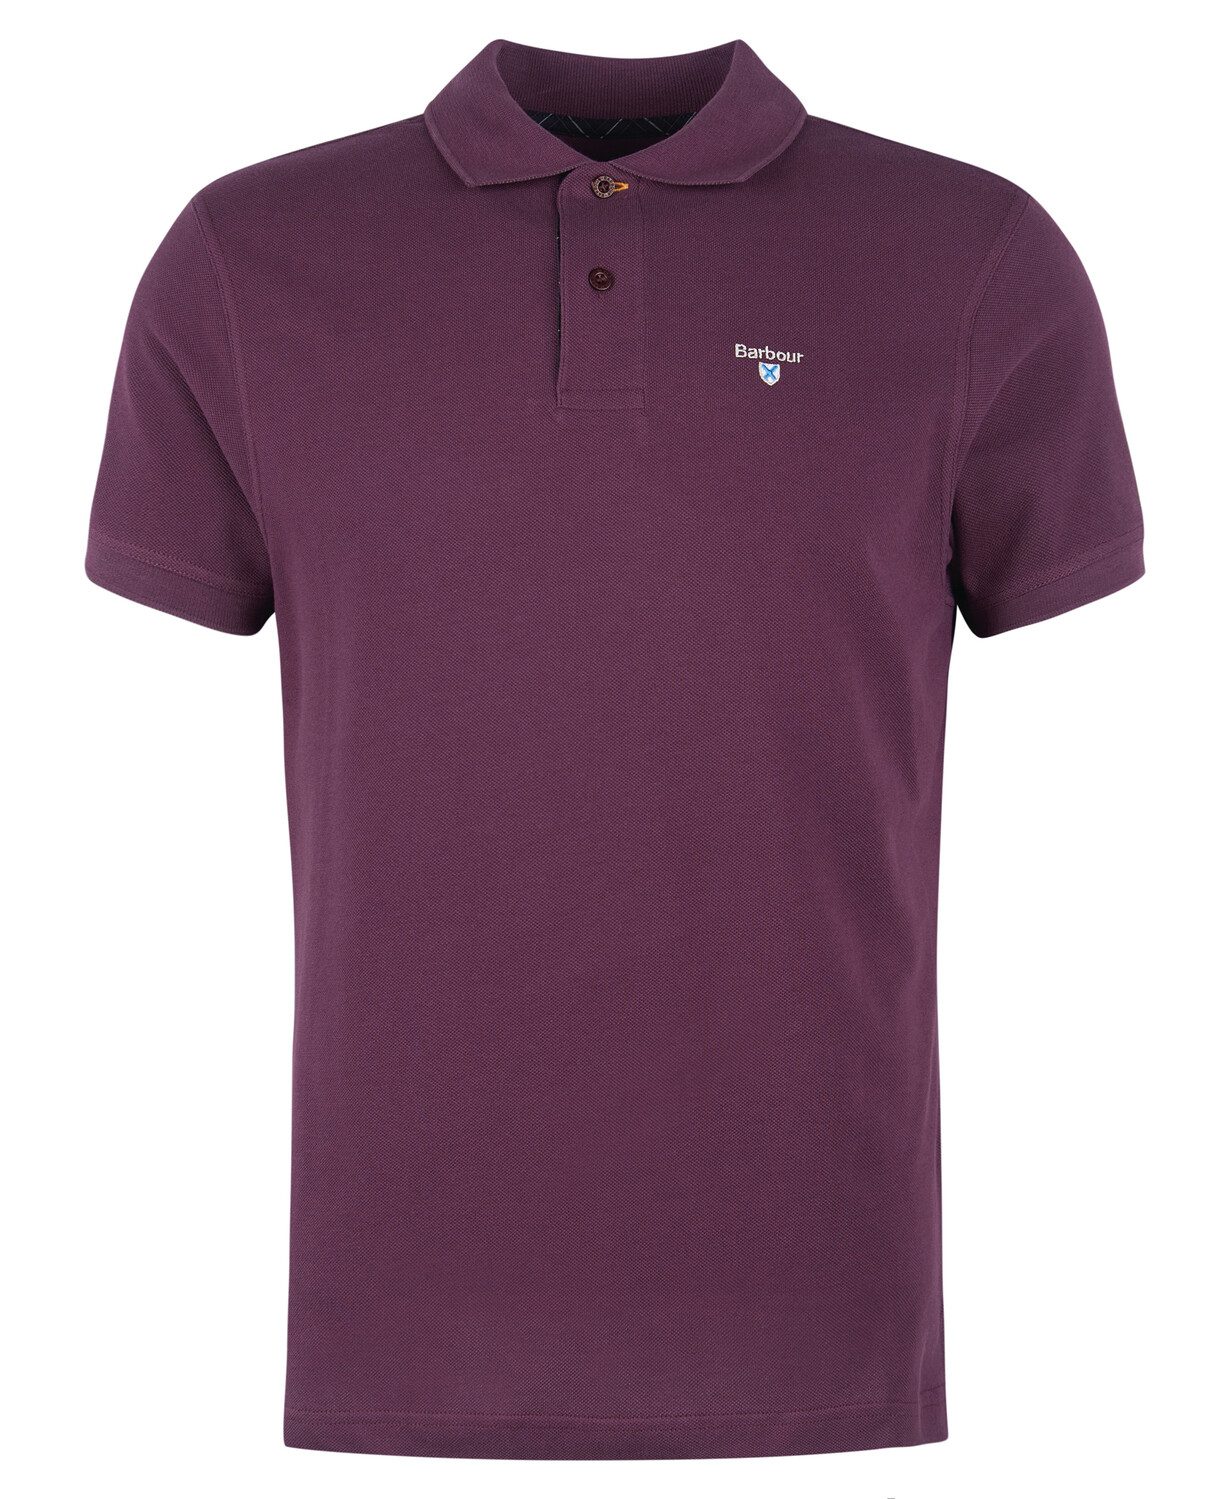 Barbour Purple Pique Cotton Tartan Trim Polo Shirt 